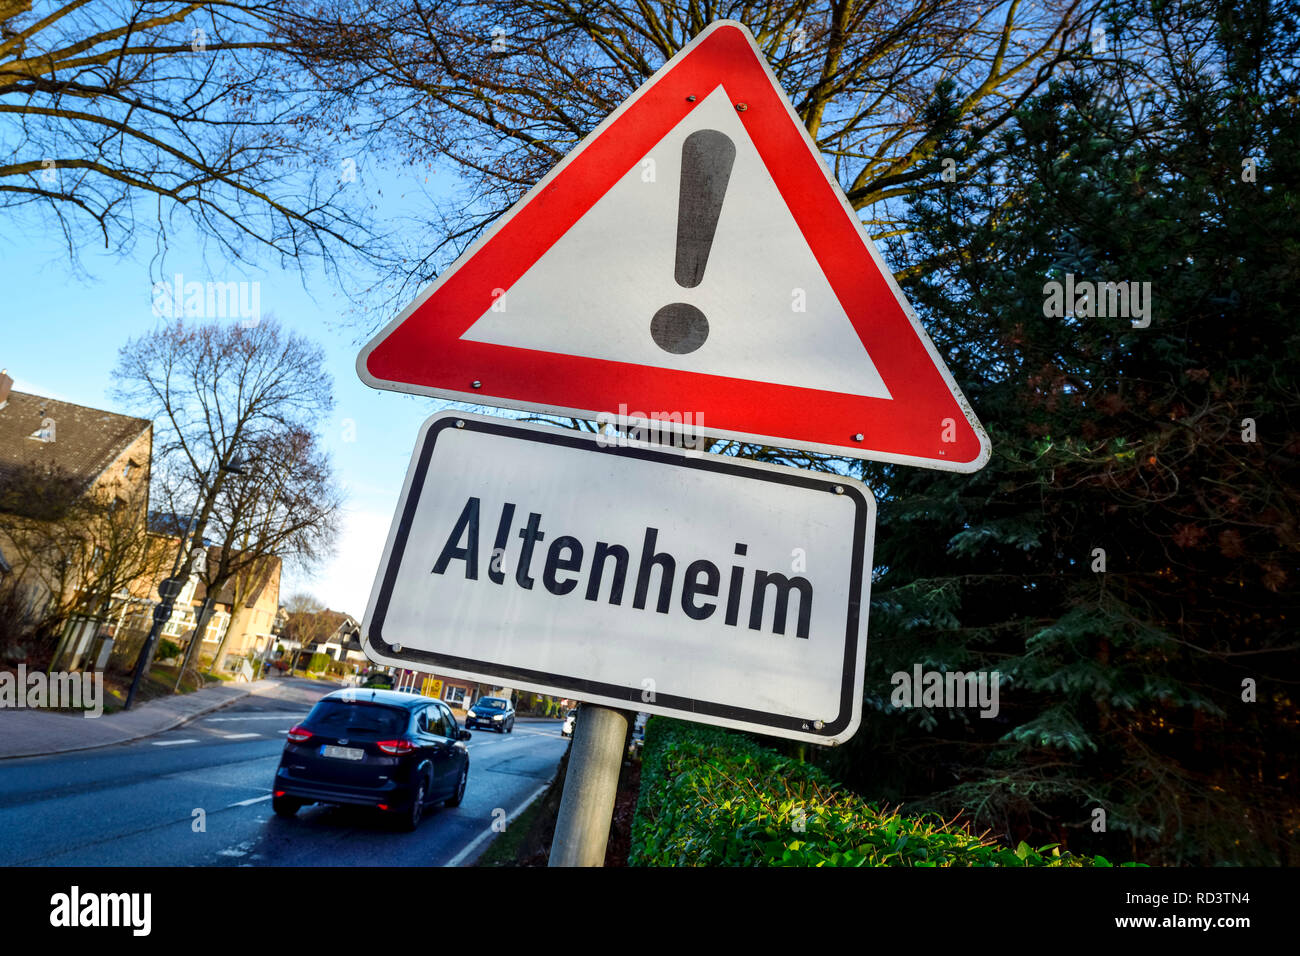 Warnung ist das Altersheim in einer Straße in Schleswig - Holstein, Warnschild Altenheim eine einer Straße in Schleswig-Holstein. Stockfoto